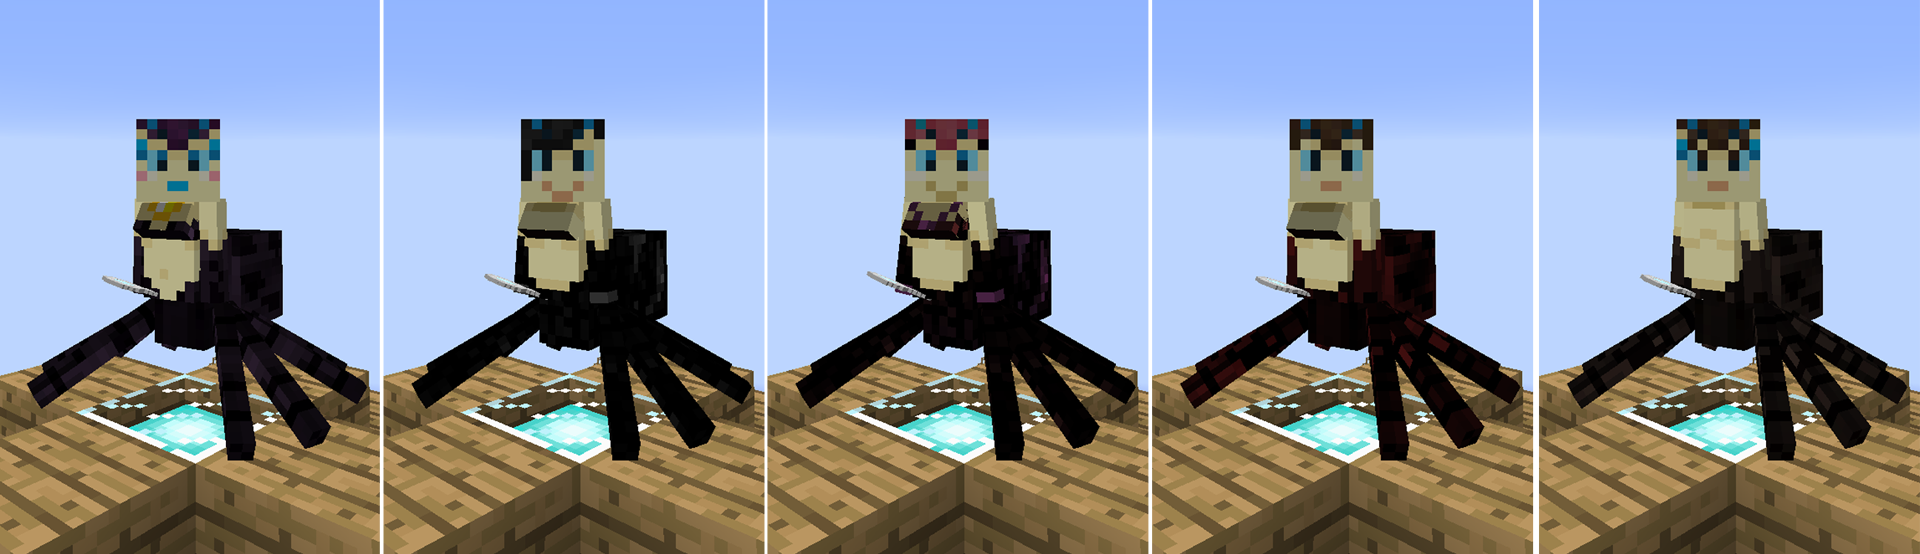 Minecraft spider queen